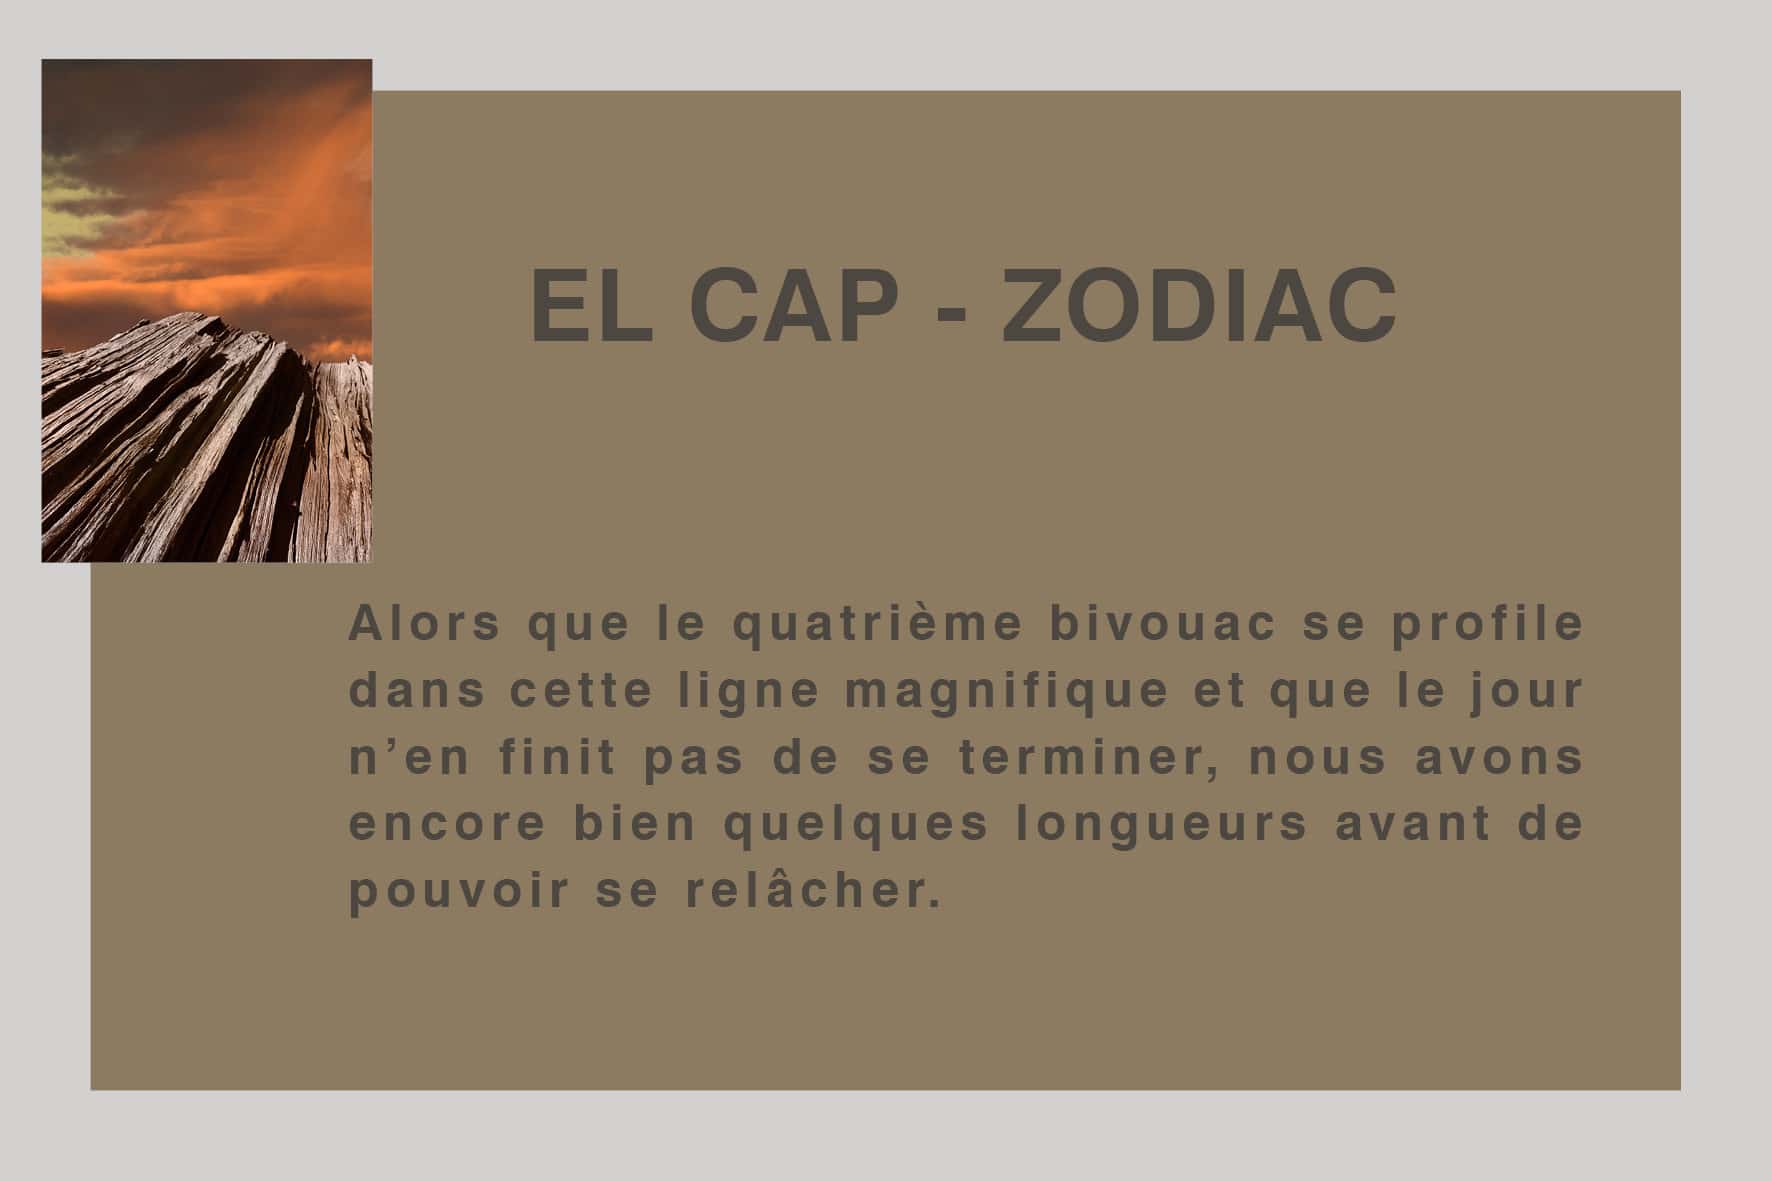 El Cap - Zodiac par Philippe Jaccard